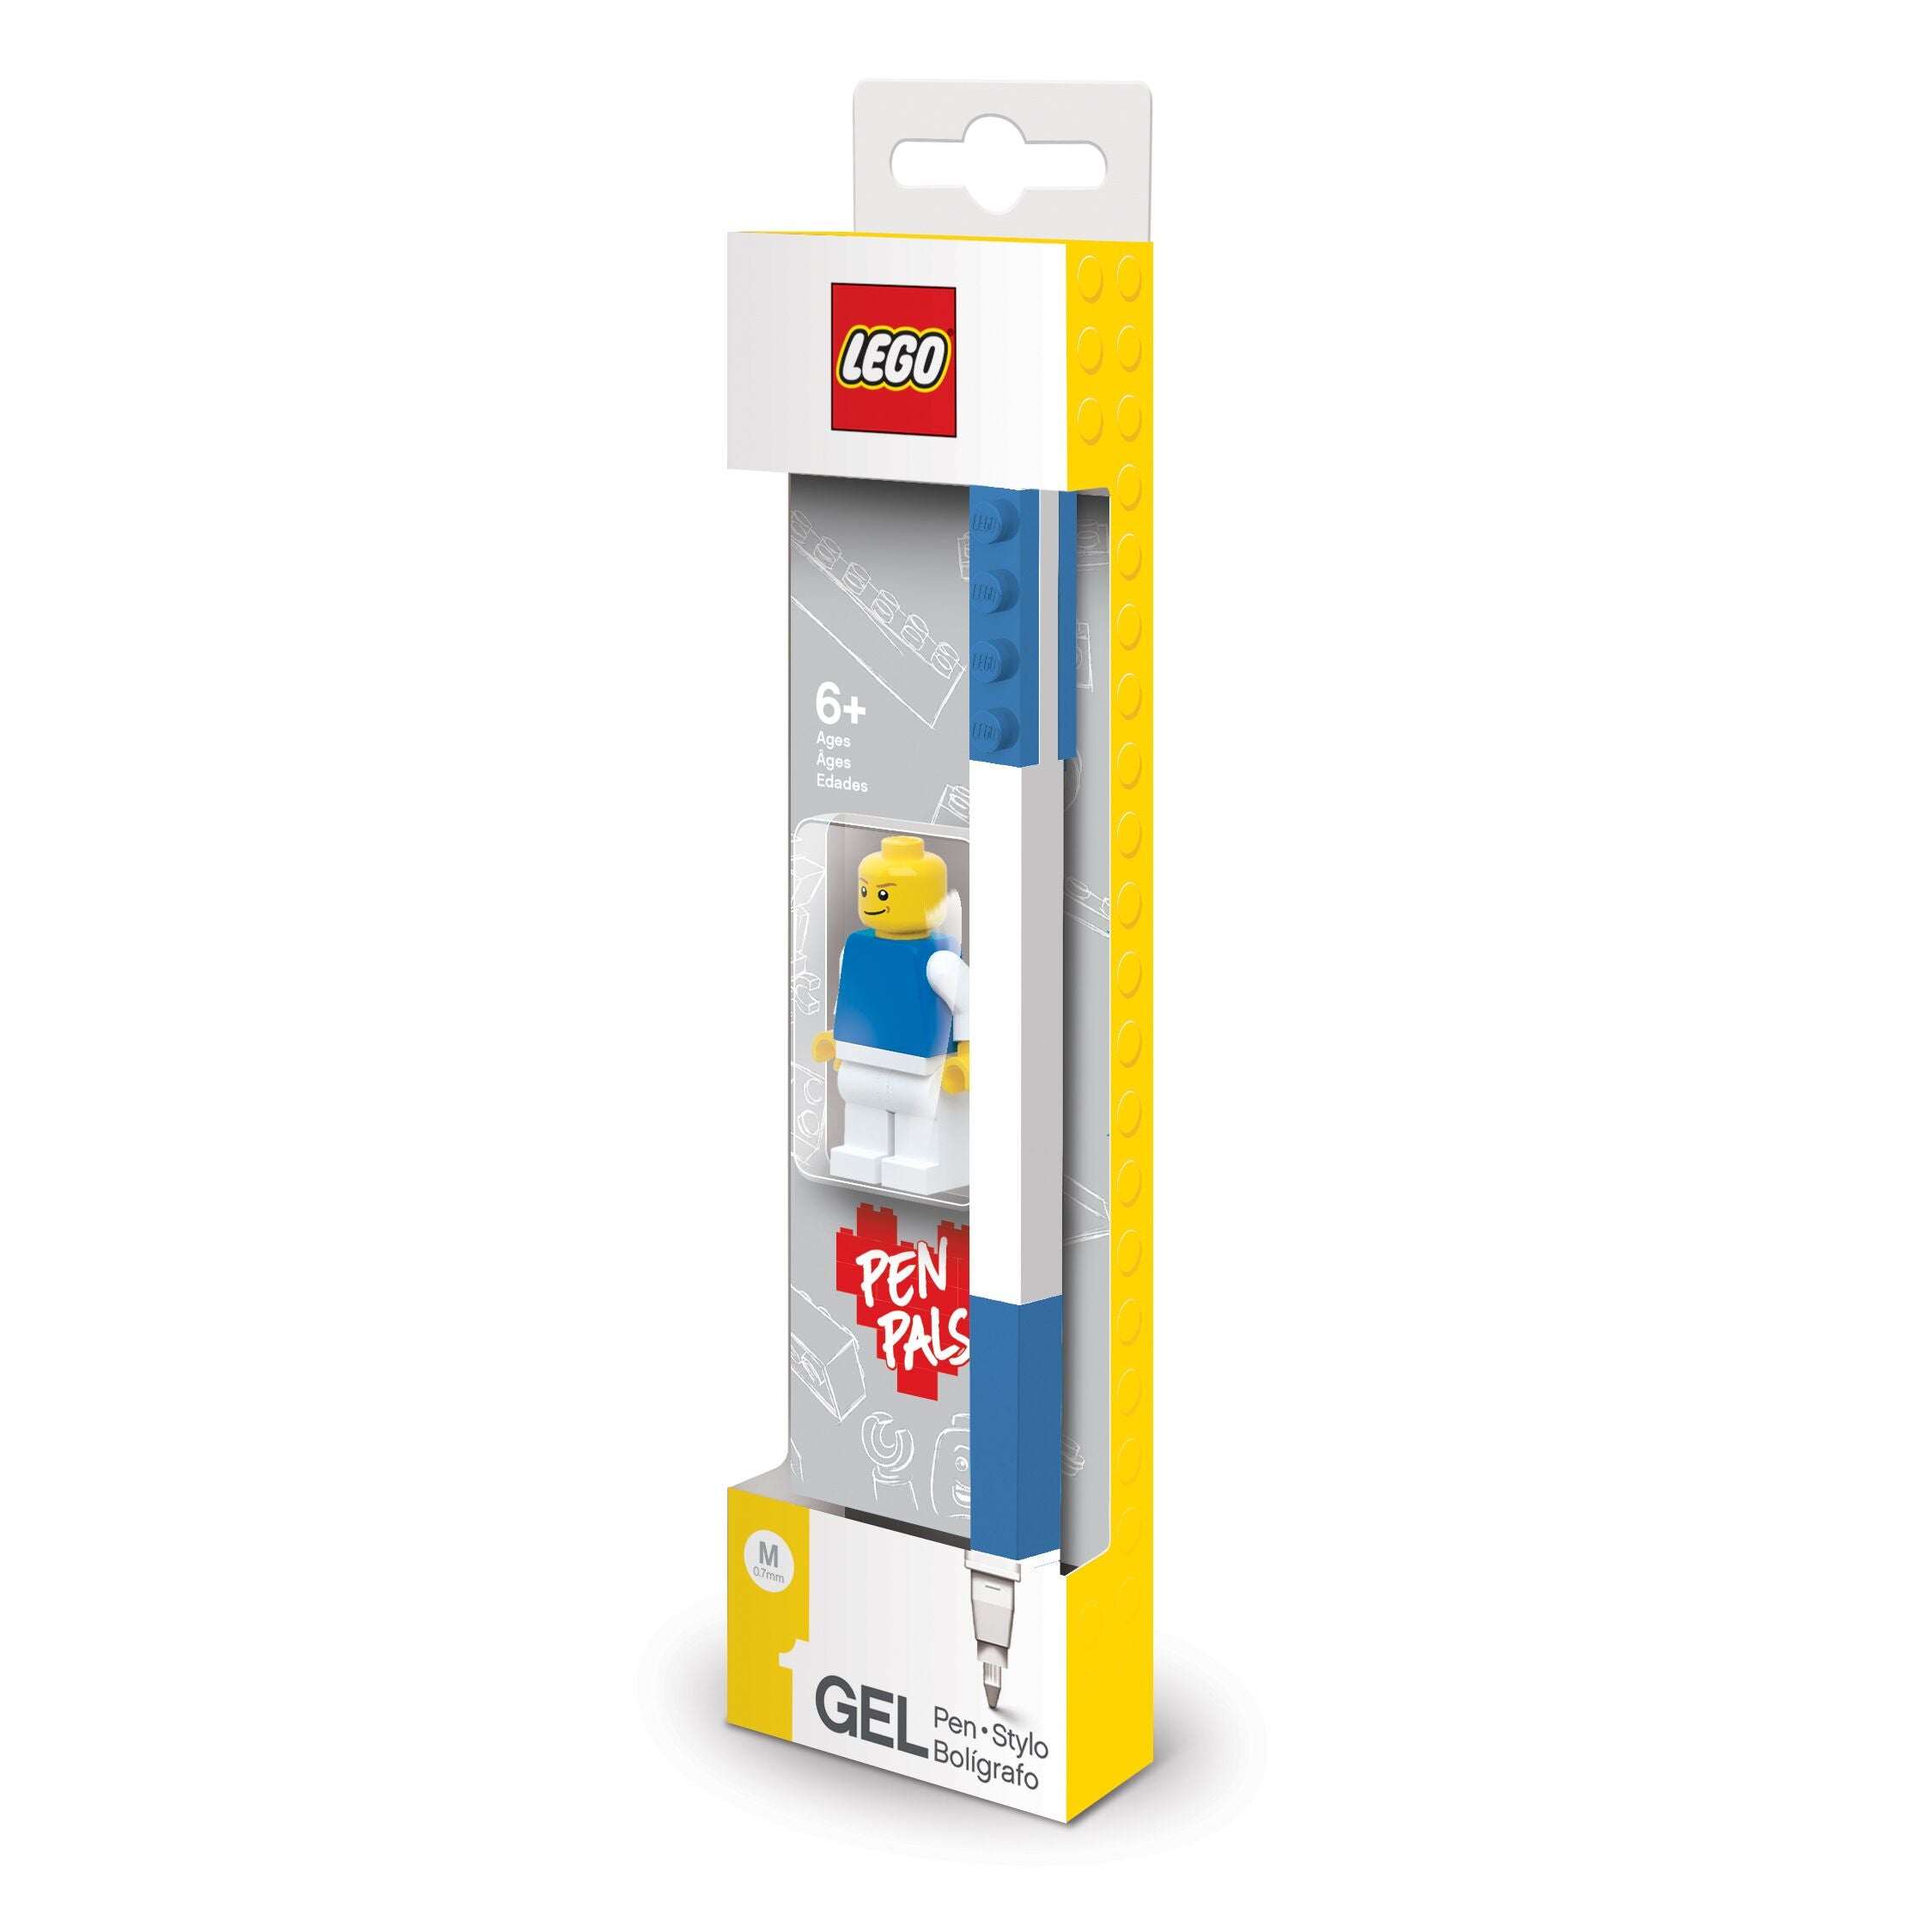 LEGO Blue Gel Pen with Mini Figure